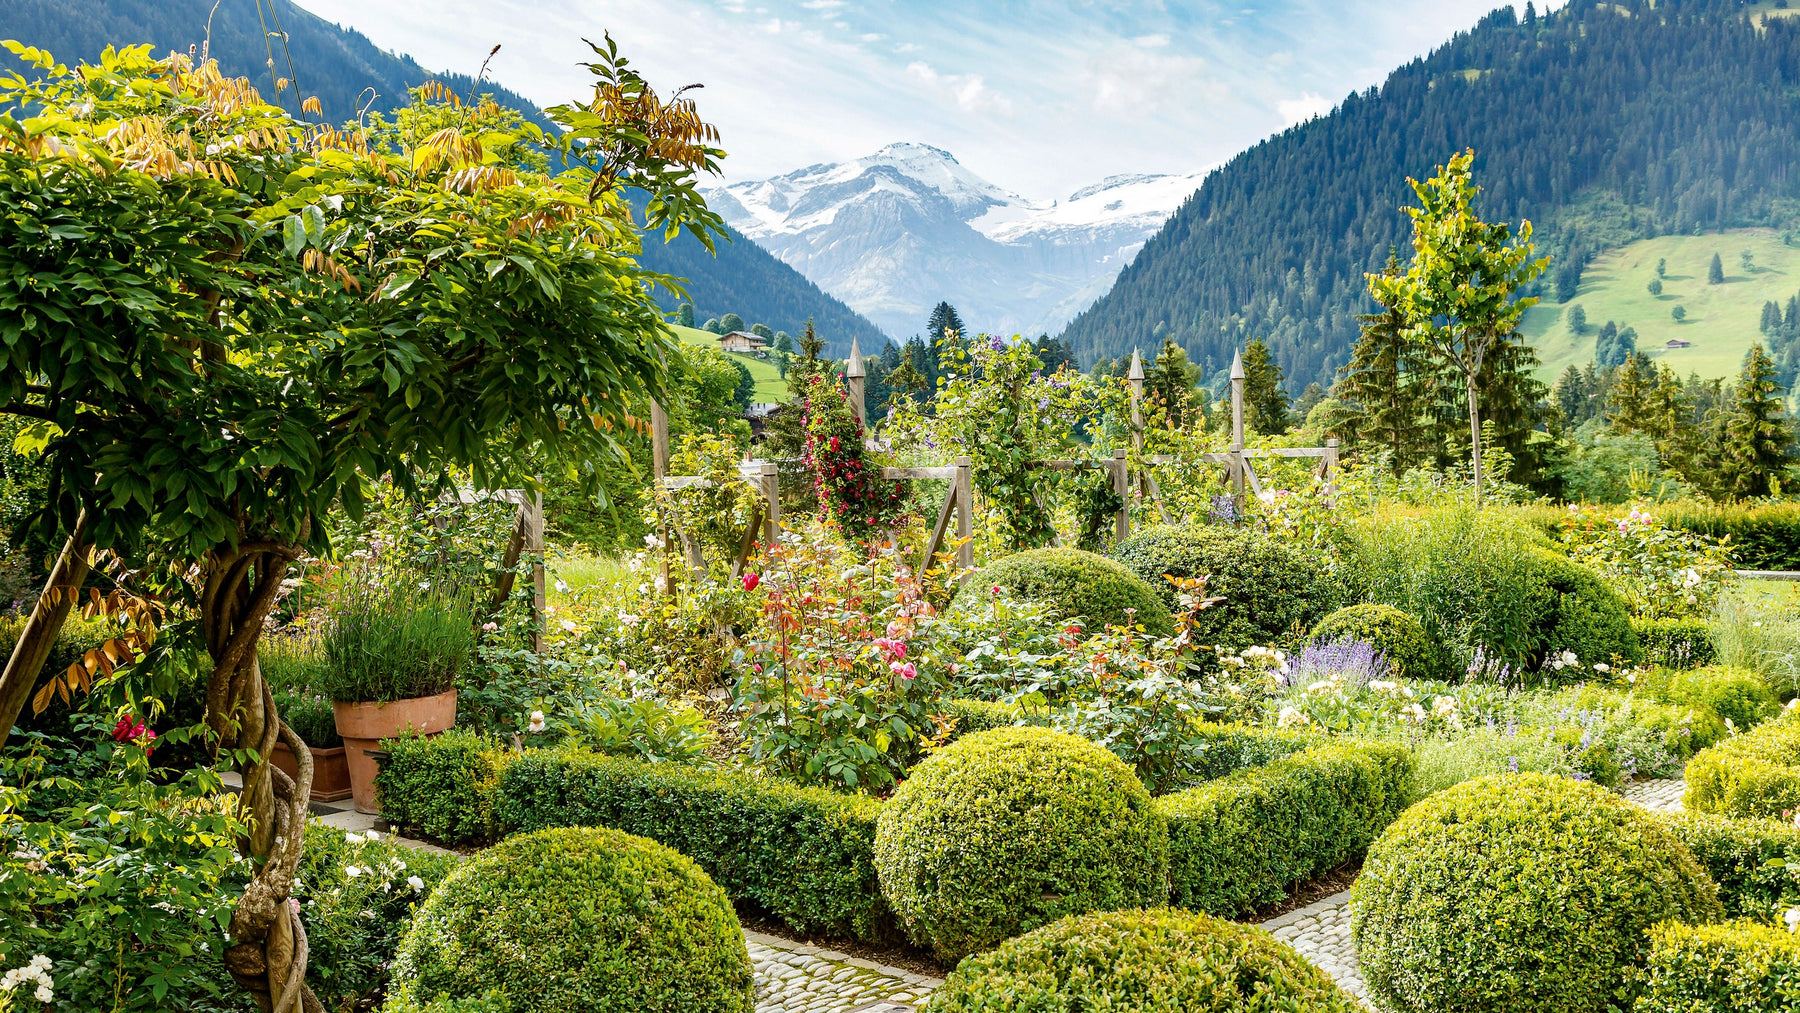 Gardens Of The World - Switzerland